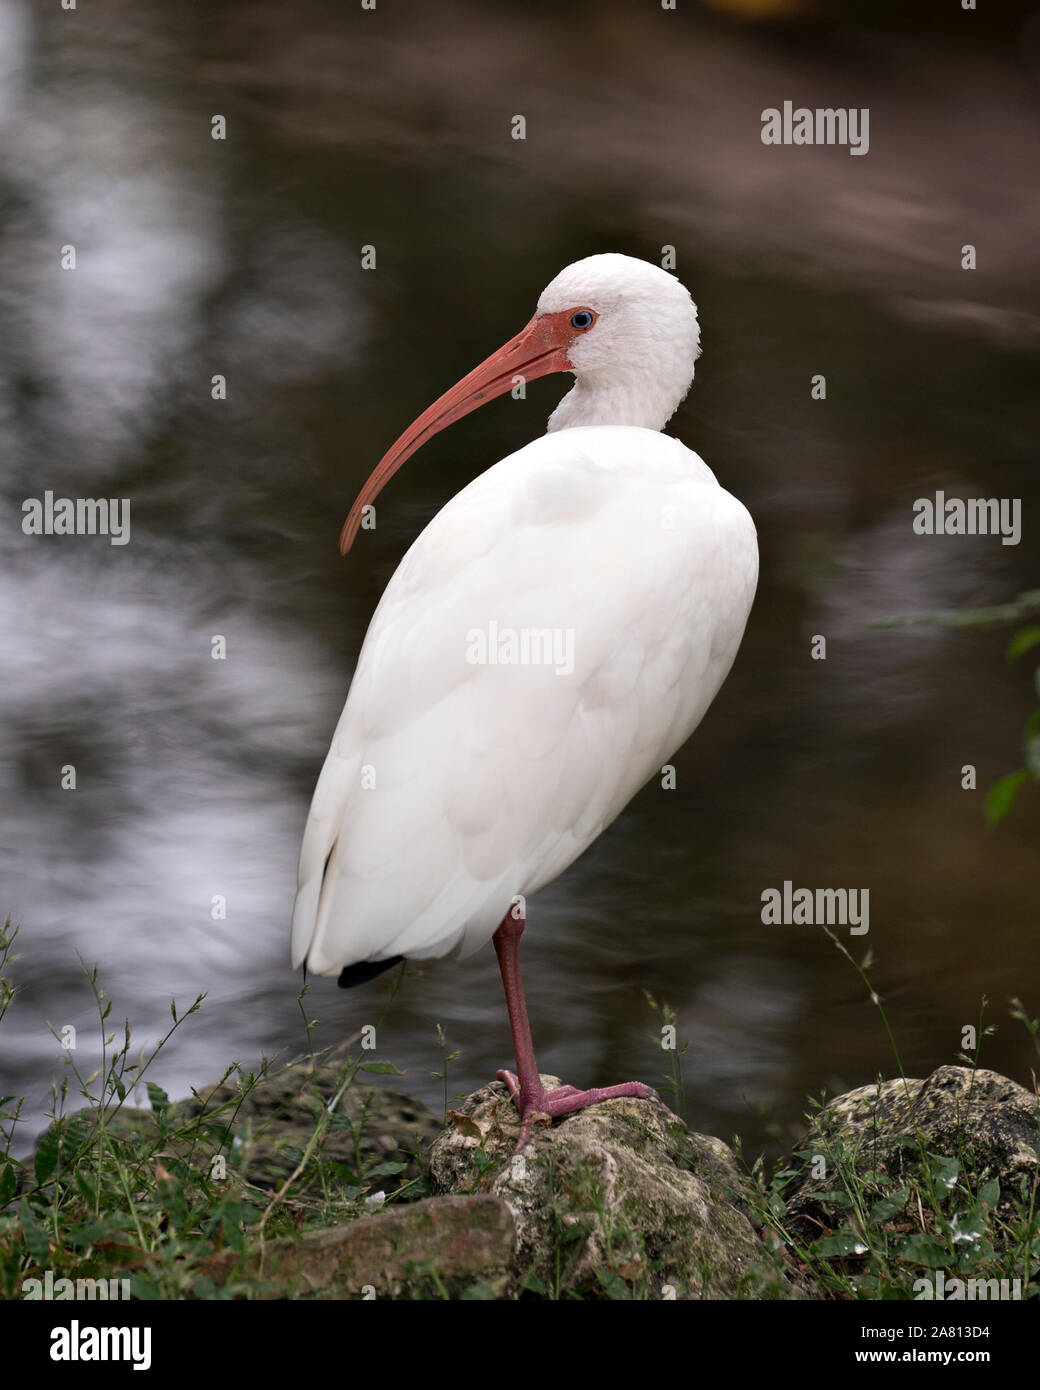 White Ibis Vogel durch das Wasser auf einem Stein saß und seinen Körper, Kopf, Auge, orange Schnabel, Hals, Füße in Ihrer Umgebung mit einem Bokeh Hintergrund. Stockfoto